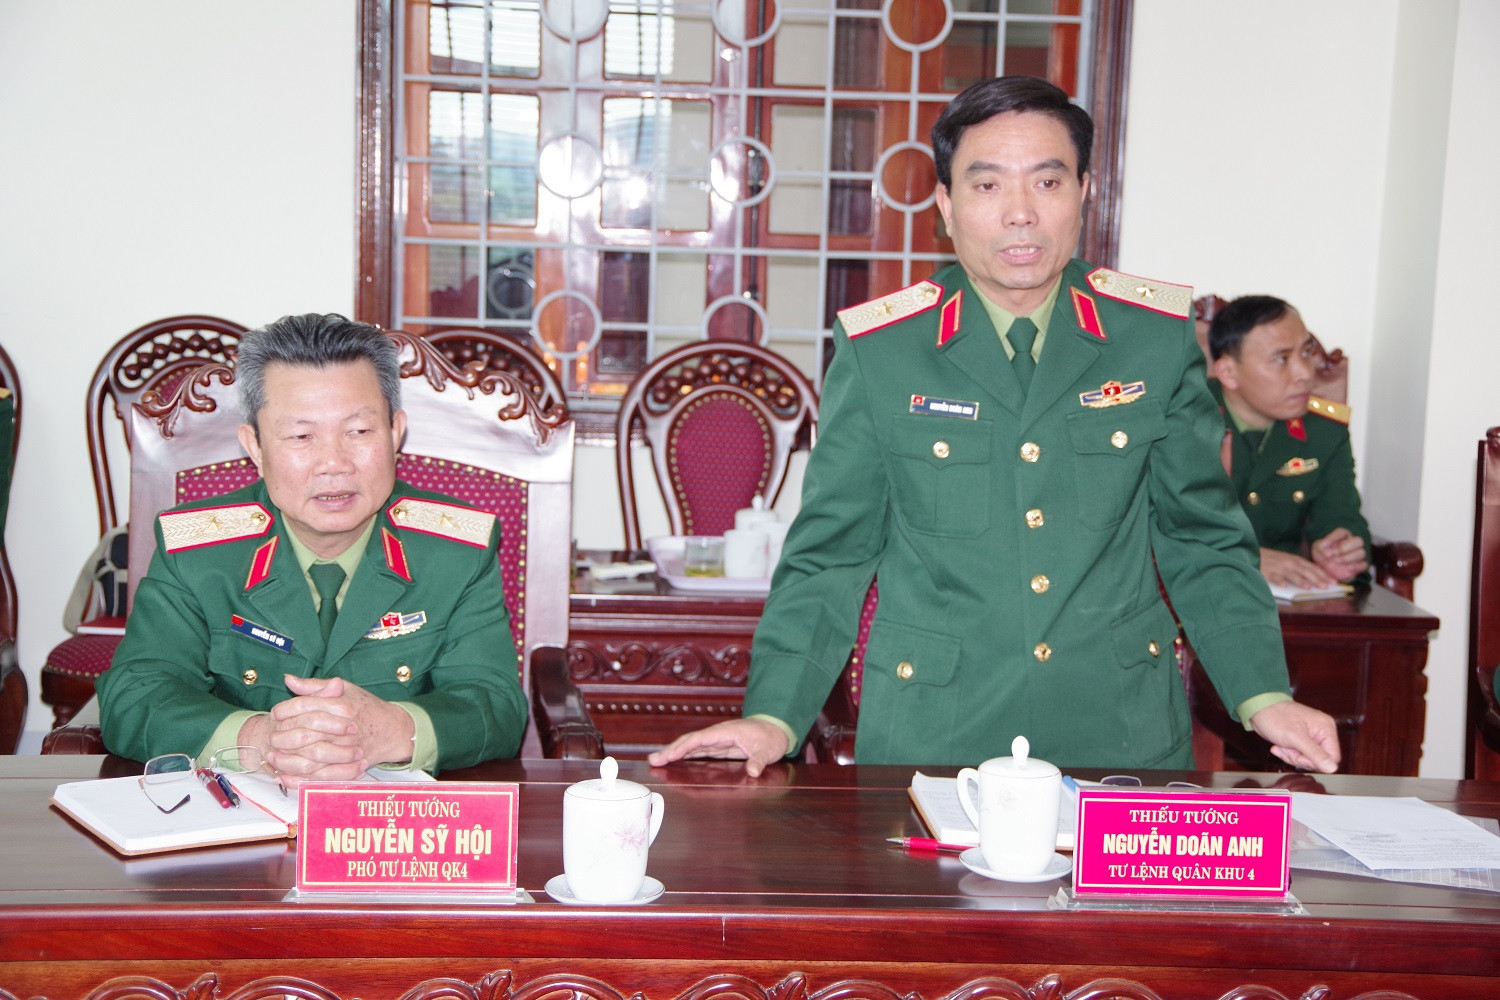 Thiếu tướng Nguyễn Doãn Anh, Tư lệnh Quân khu phát biểu đề xuất 5 nội dung công tác hậu cần với đoàn công tác TCHC (Phong Quang)